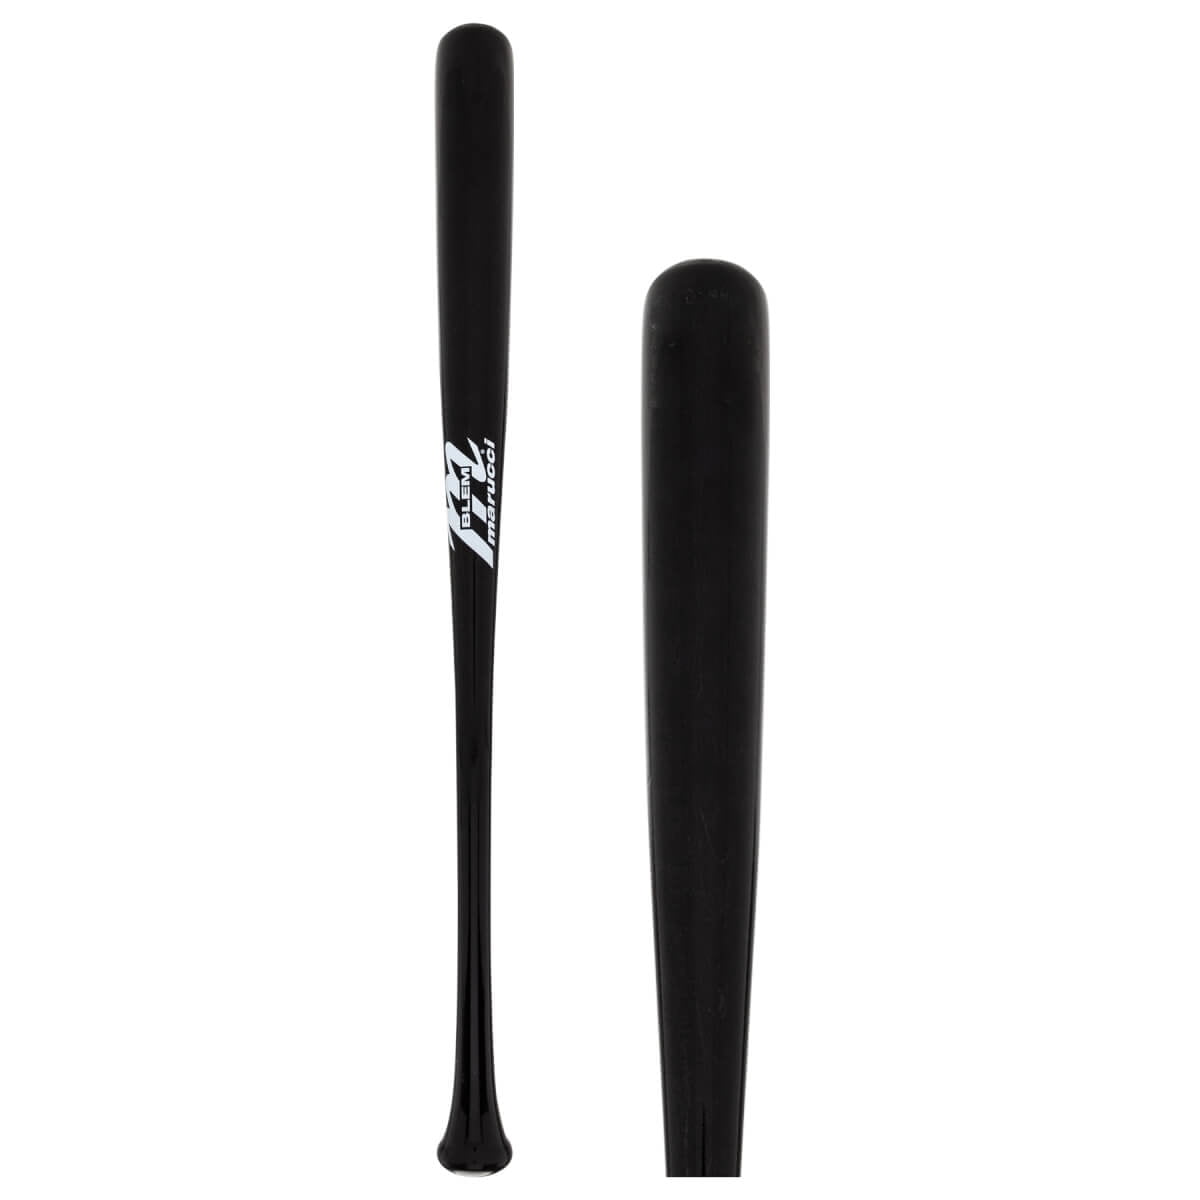 FREE SHIPPING! 10 Pack——26”-30” Wooden Blem Baseball Bats! 